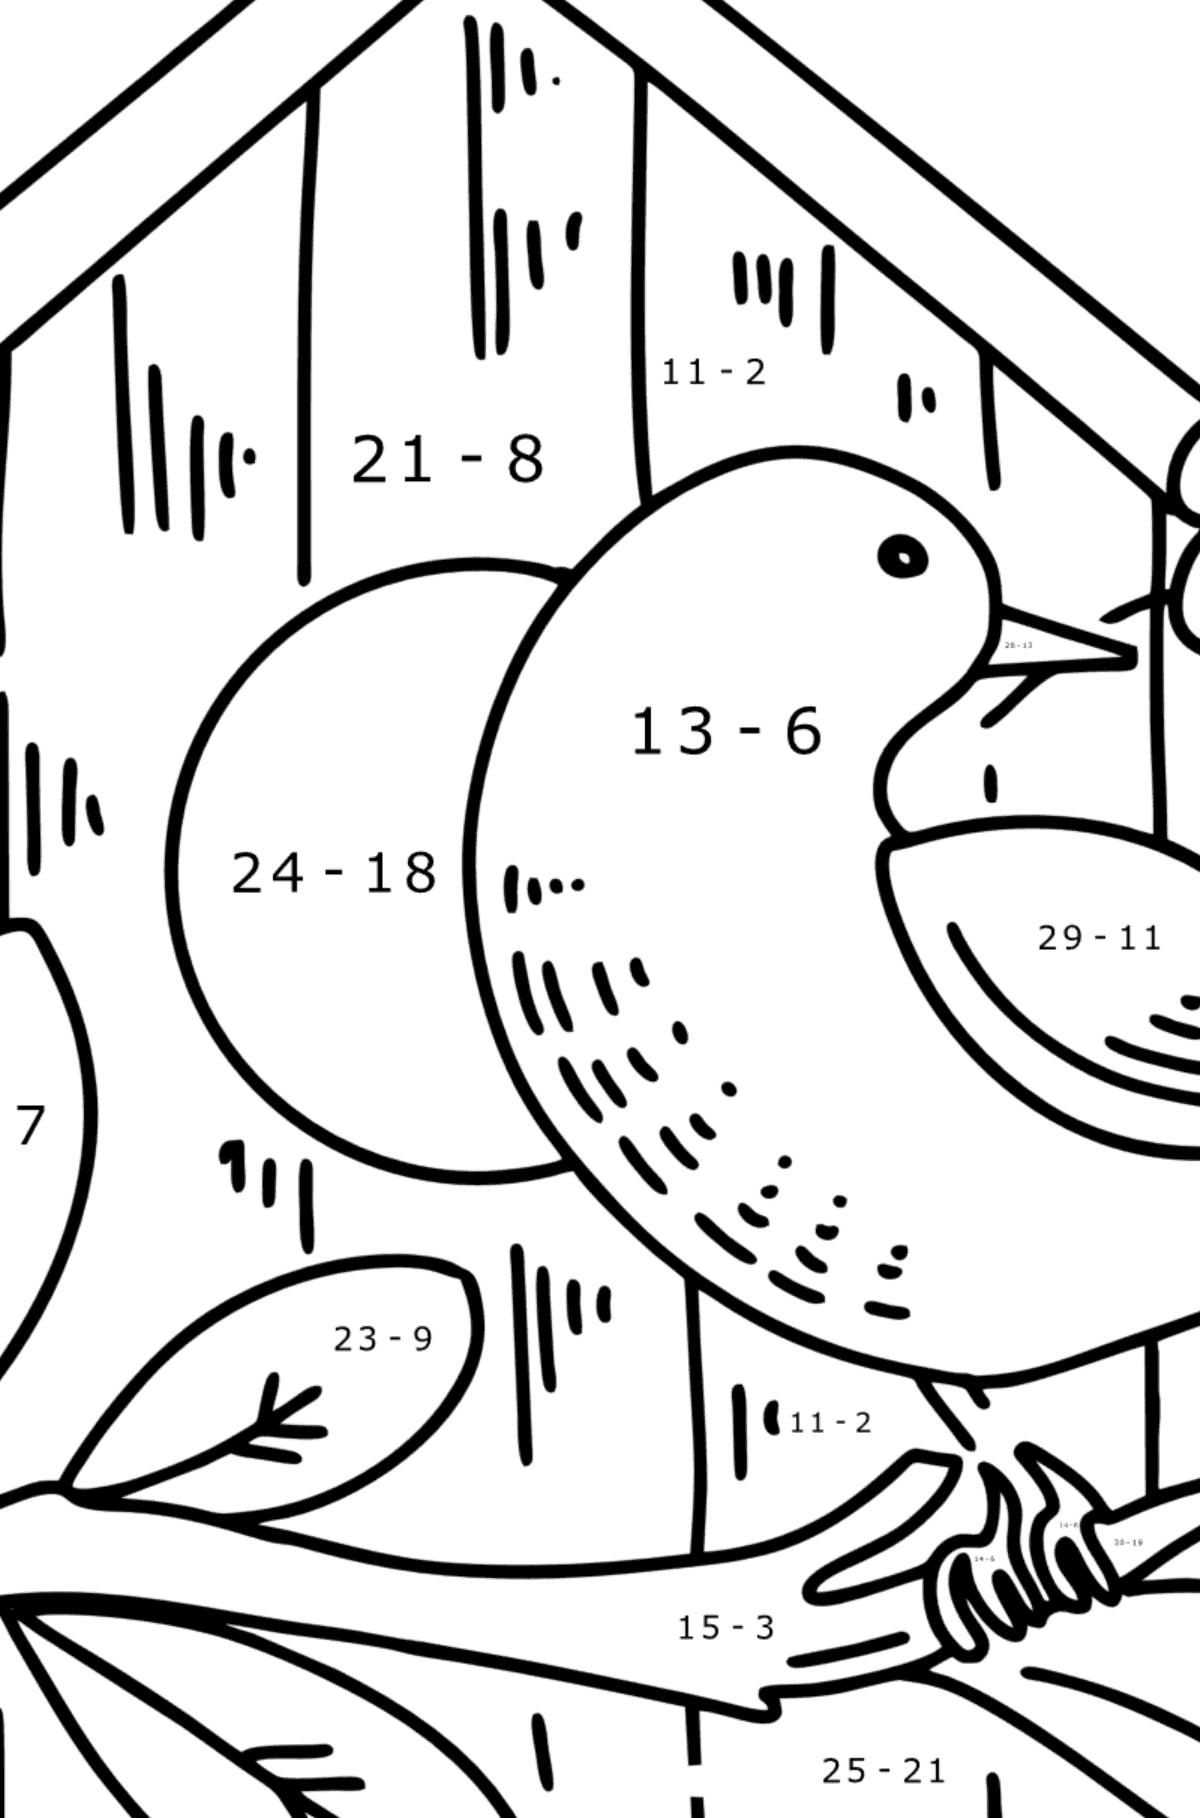 Omalovánka špaček u ptačí budky - Matematická Omalovánka - Odčítání pro děti